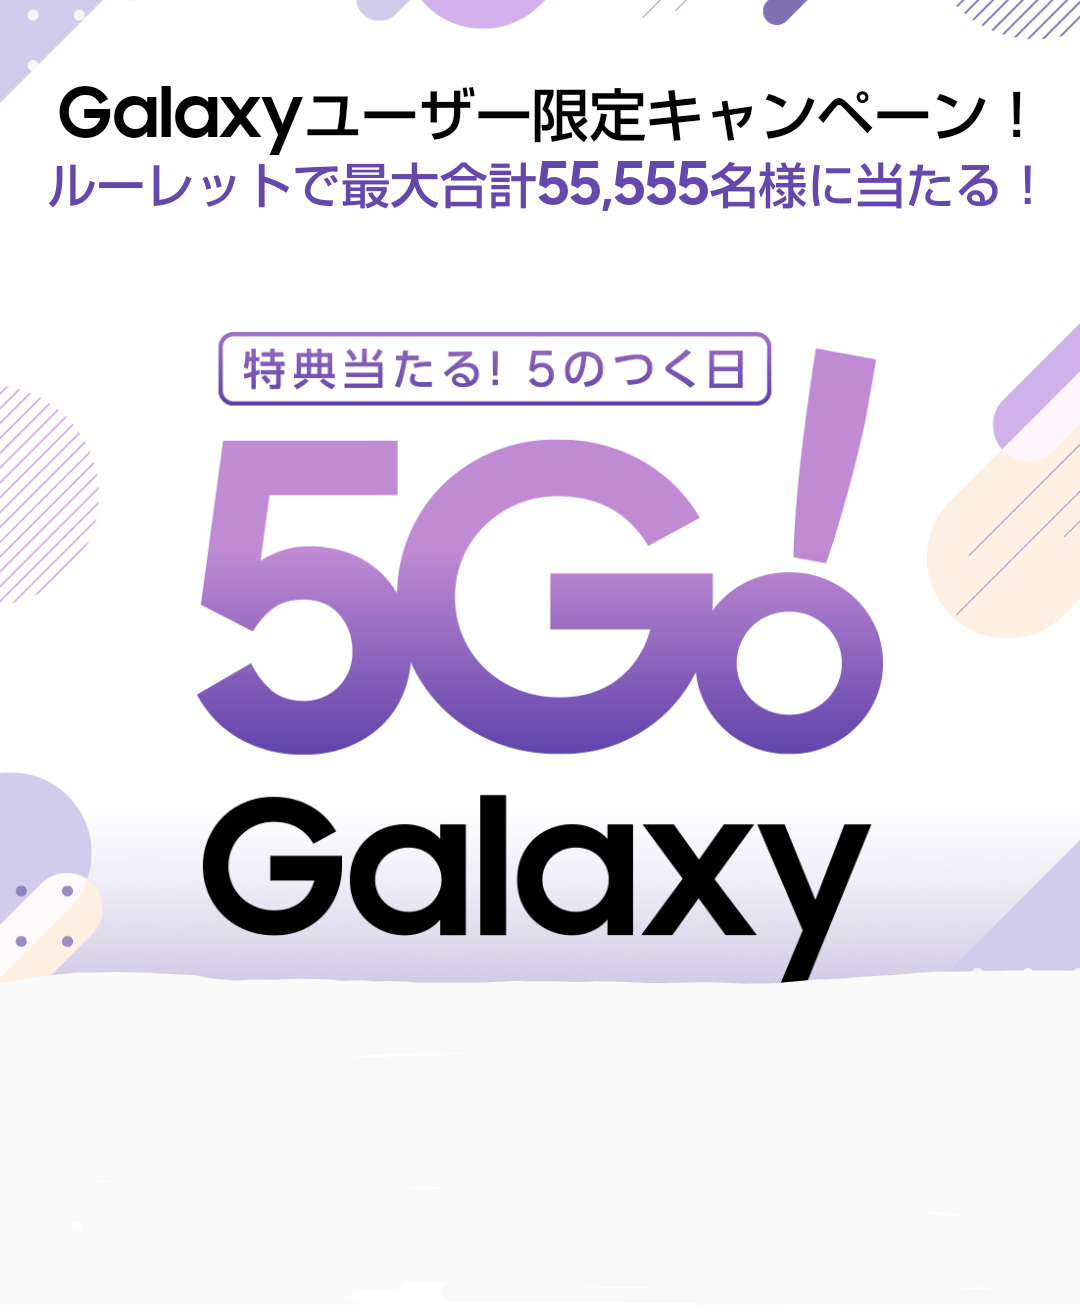 Galaxy Members限定『5Go! Galaxy』で無料クーポンなどが抽選で 55,555名に当たる！「12月版」キャンペーンの案内に使用する為、ギャラクシーメンバーズの日公式のスクリーンショット画像を使用しています